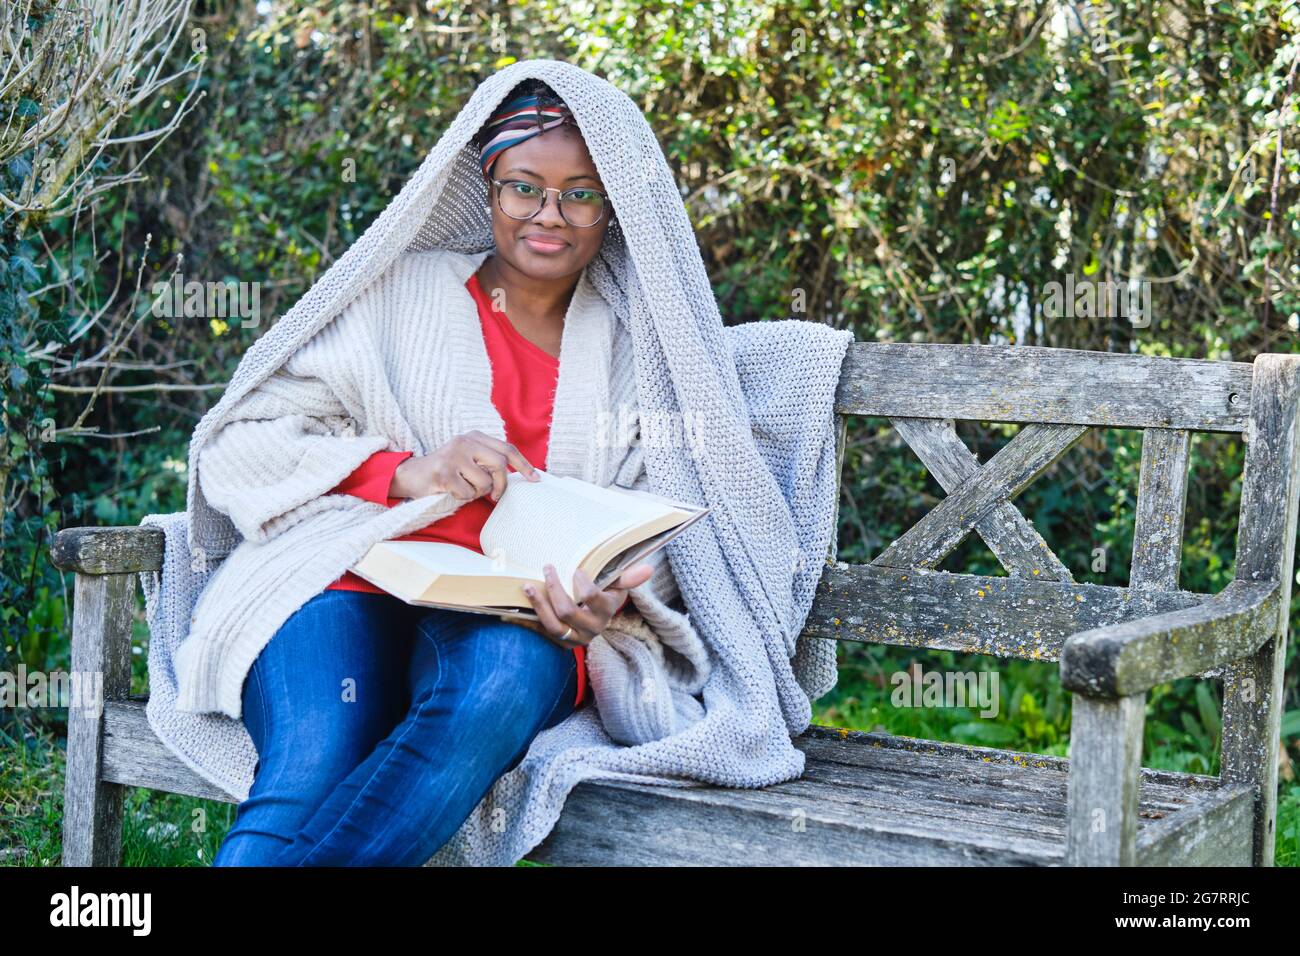 Ritratto di una giovane donna nera con acconciatura e occhiali afro che legge un libro seduto su una vecchia panchina giardino. Concetto di stile di vita. Foto Stock